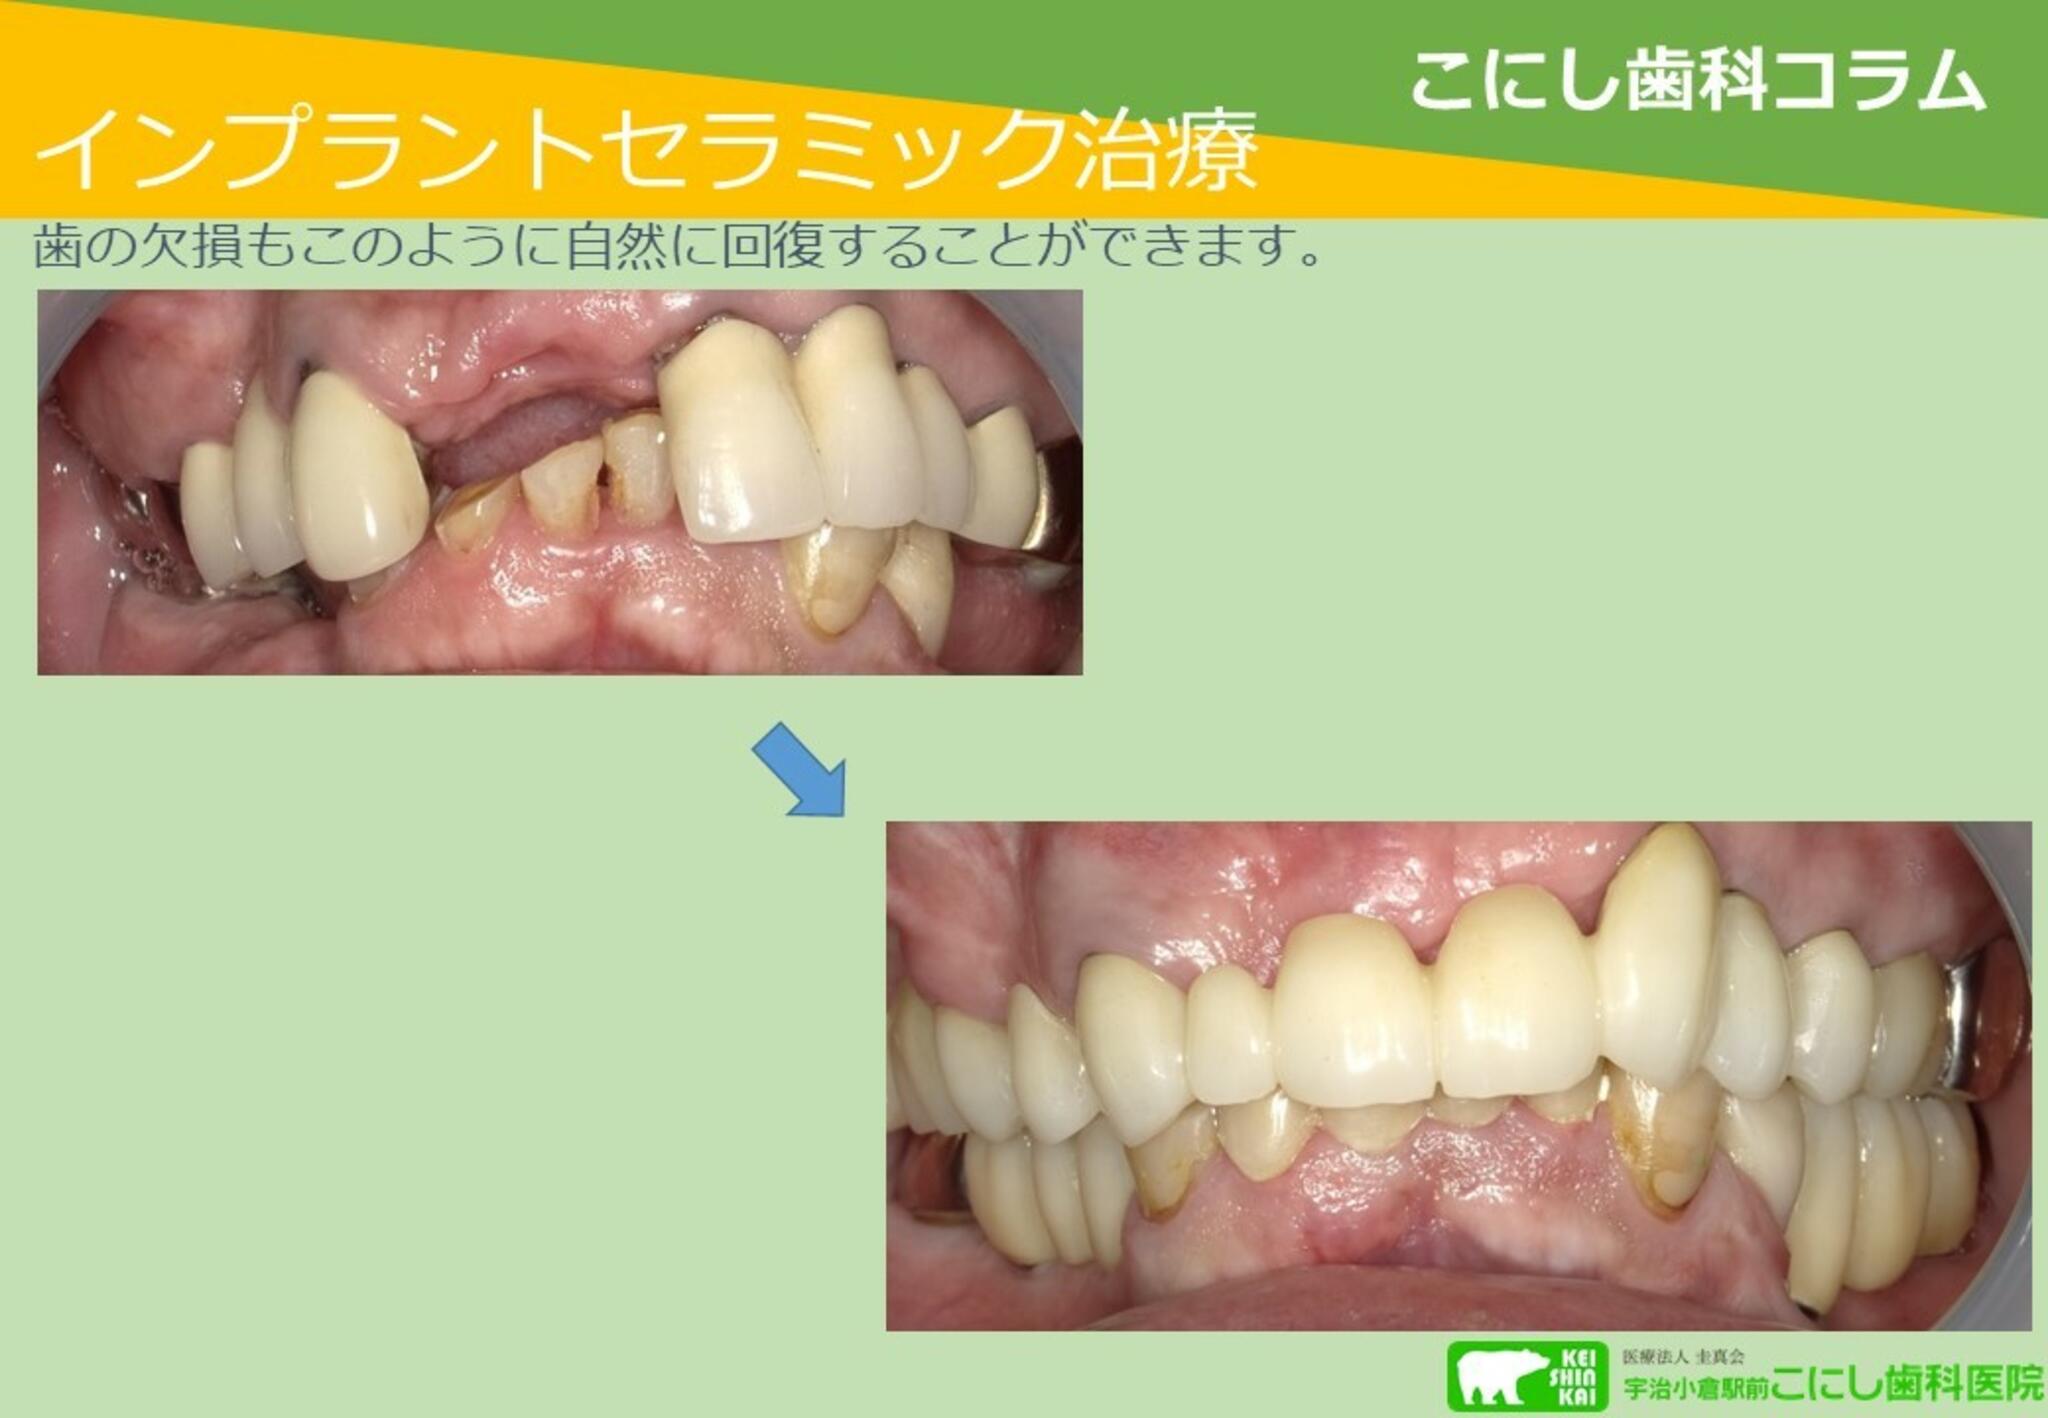 宇治小倉駅前 こにし歯科医院からのお知らせ(インプラントとセラミック治療)に関する写真